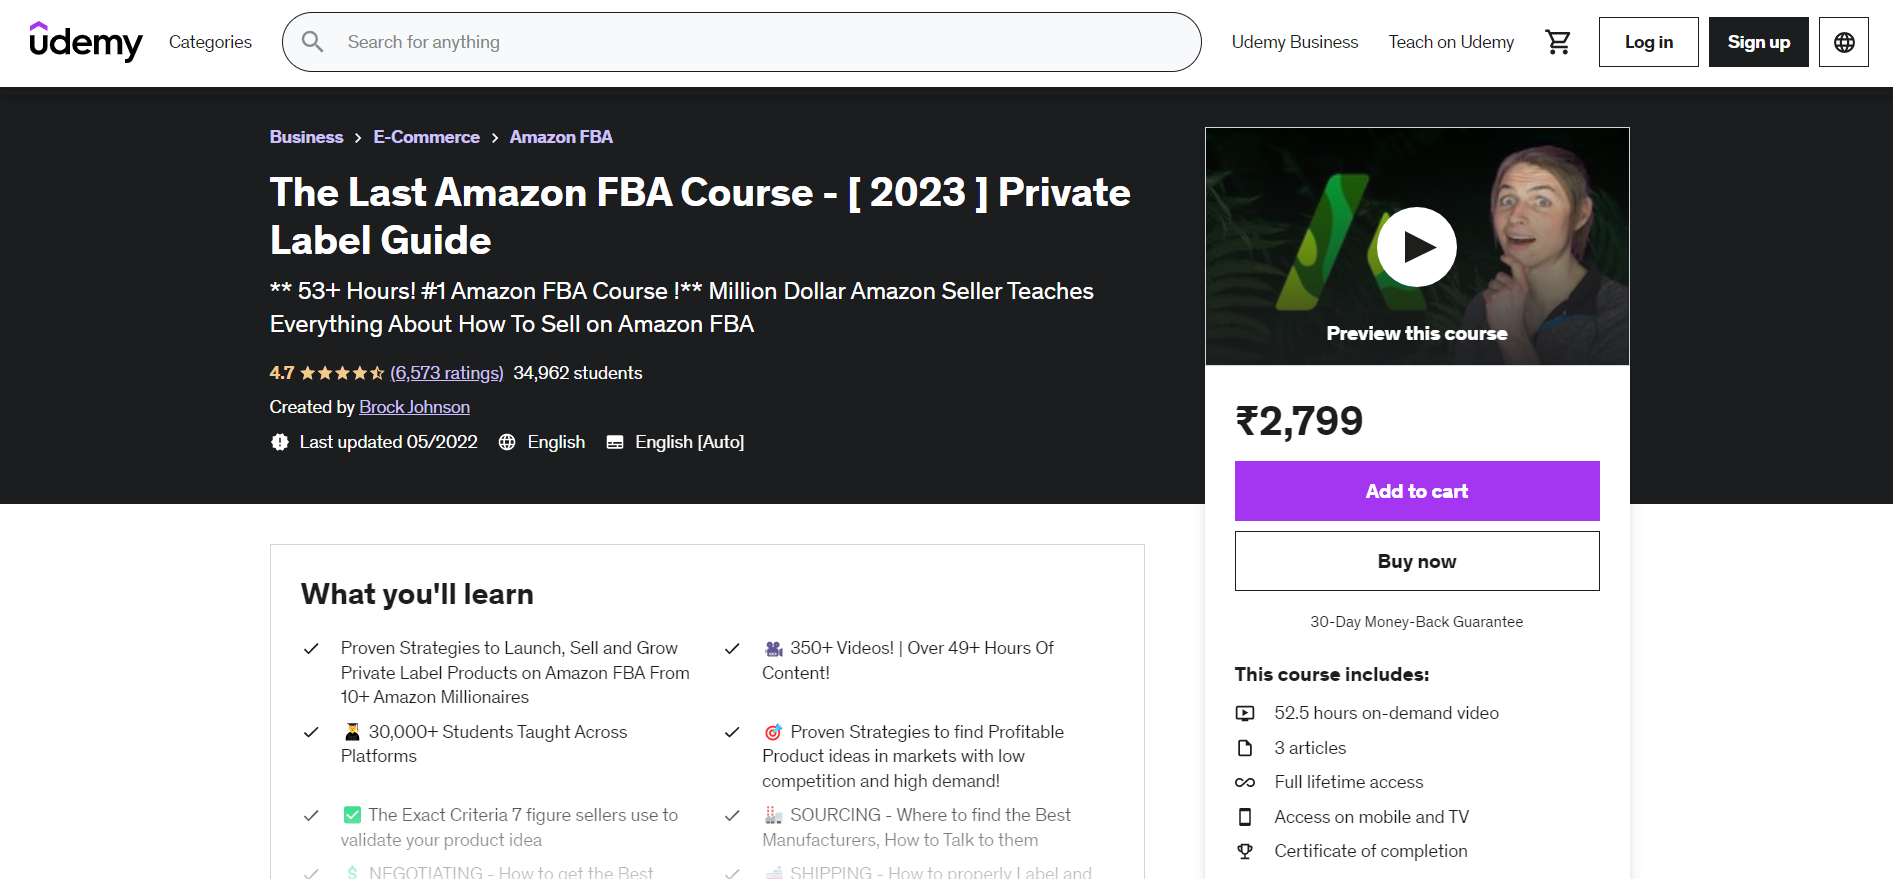 The Last Amazon FBA Course - [2023] Private Label Guide